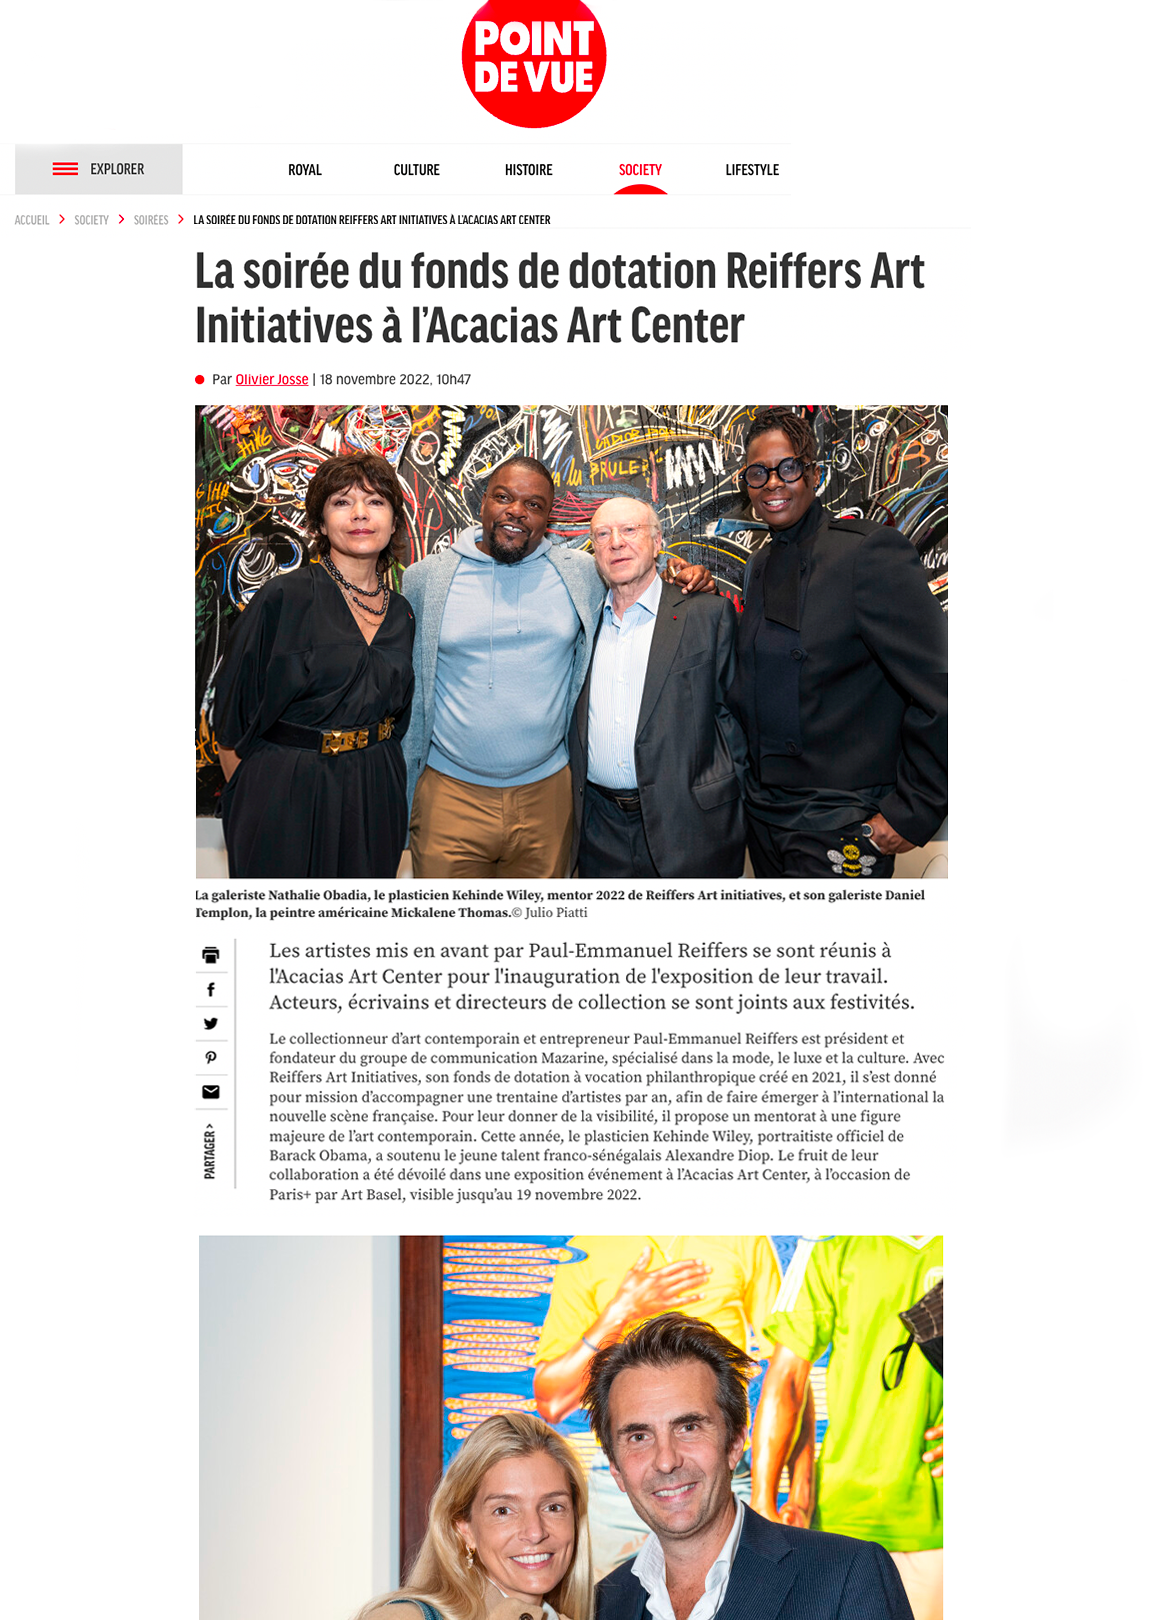 La soirée du fonds de dotation Reiffers Art Initiatives à l'Acacias Art Center